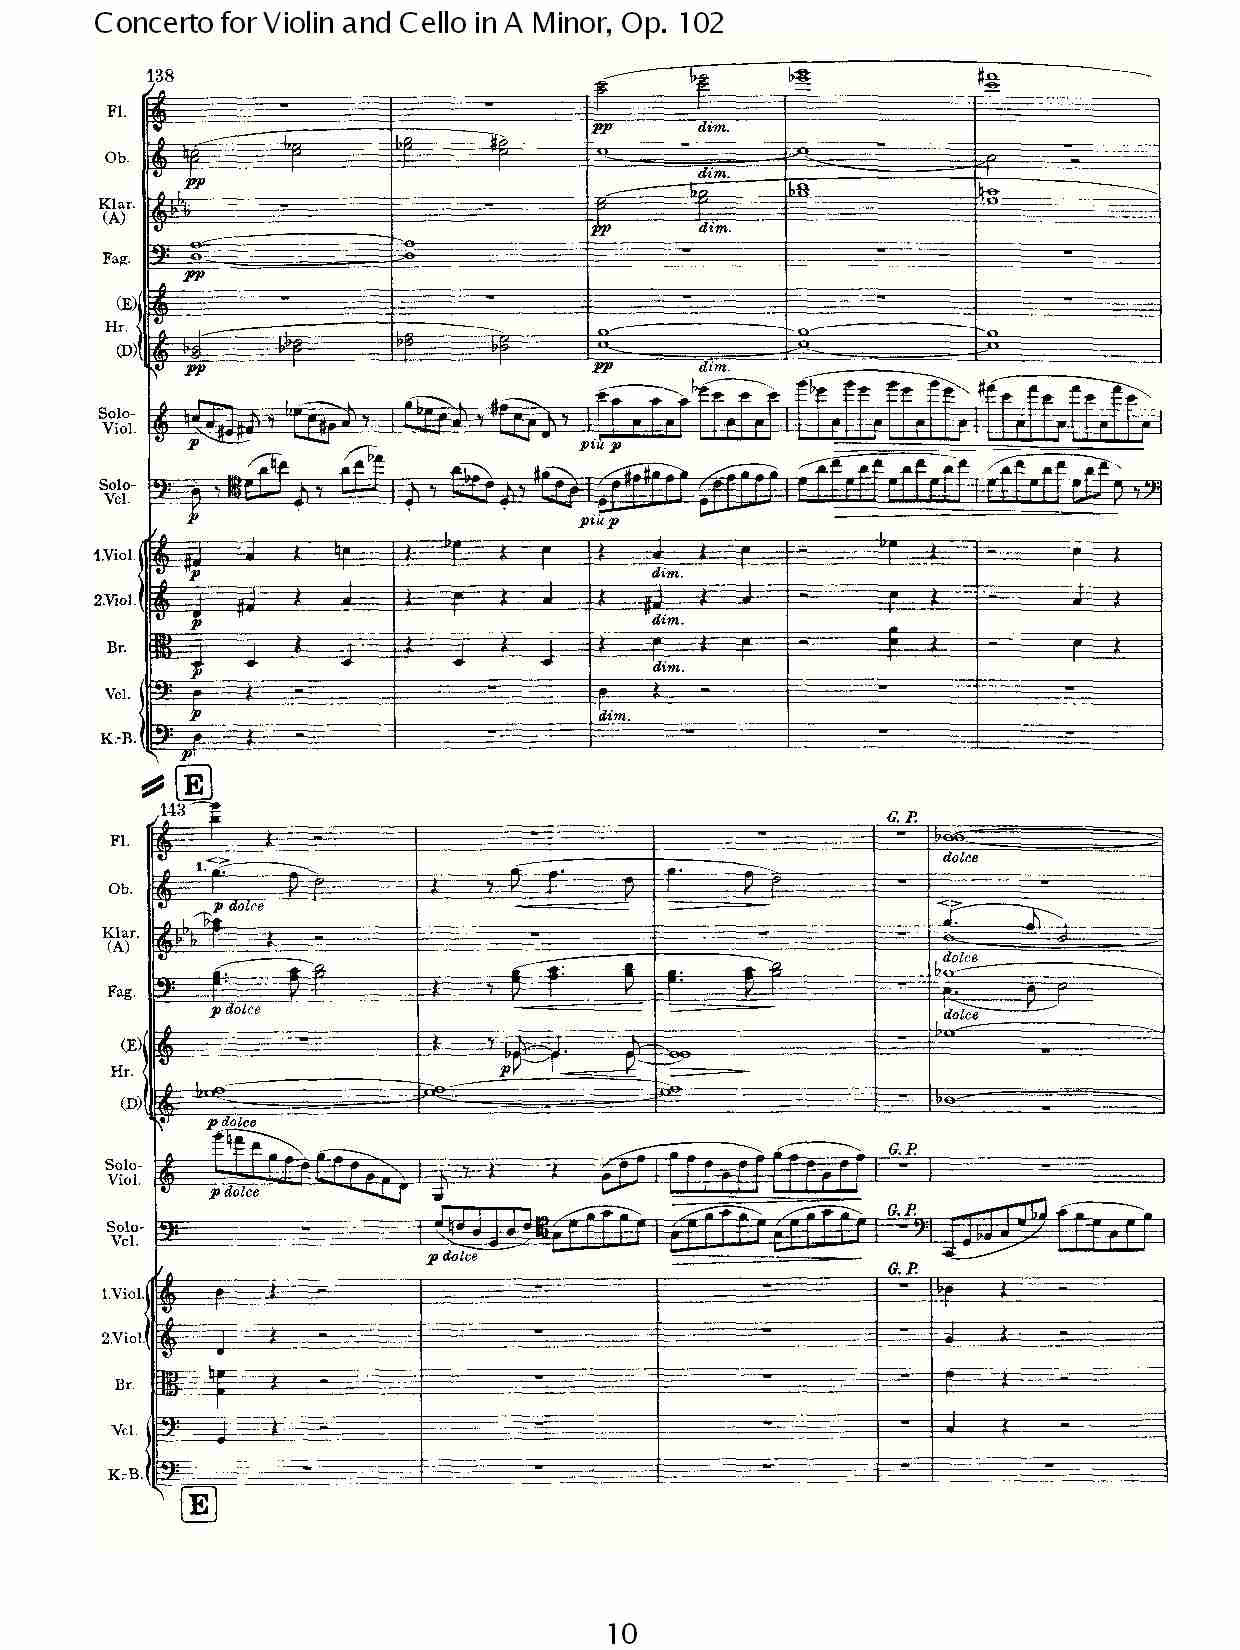 A小调小提琴与大提琴协奏曲, Op.102第一乐章（二）总谱（图5）